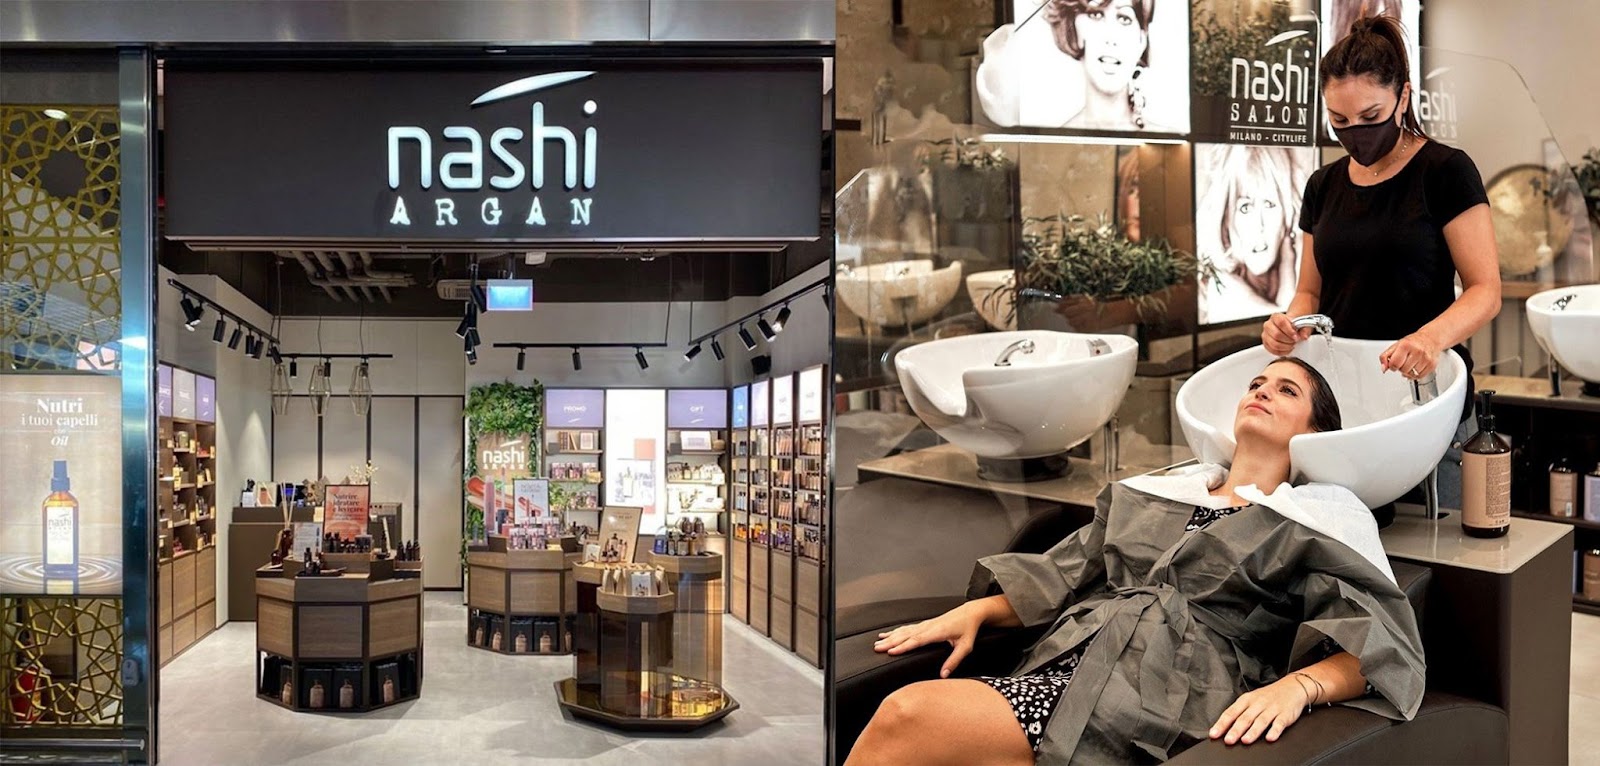 Khám phá thế giới Nashi Argan tại hệ thống salon chuyên nghiệp- Ảnh 1.